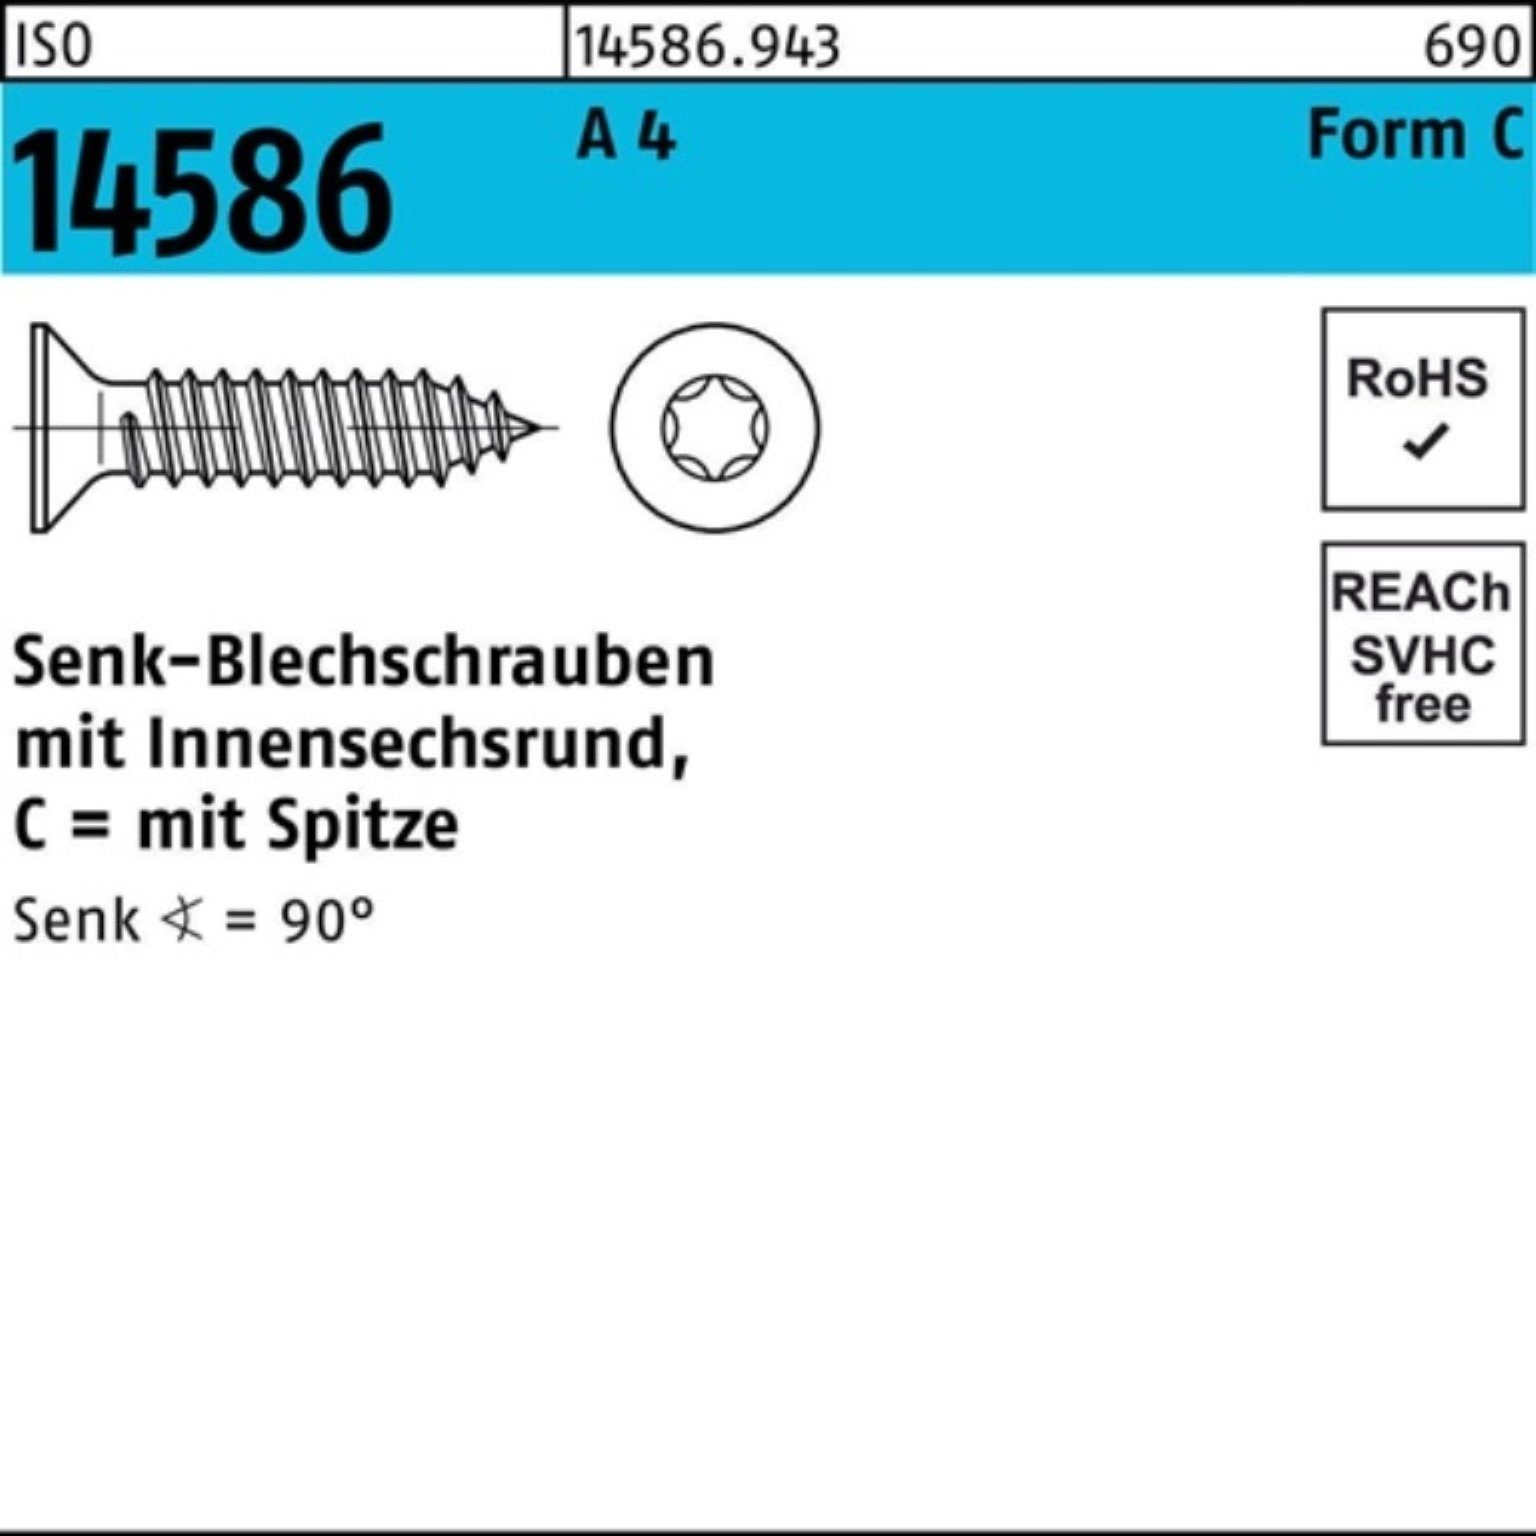 19-T20 Pack 4 ISO 500er Schraube A ISR/Spitze 4,2x 500 Reyher Senkblechschraube 14586